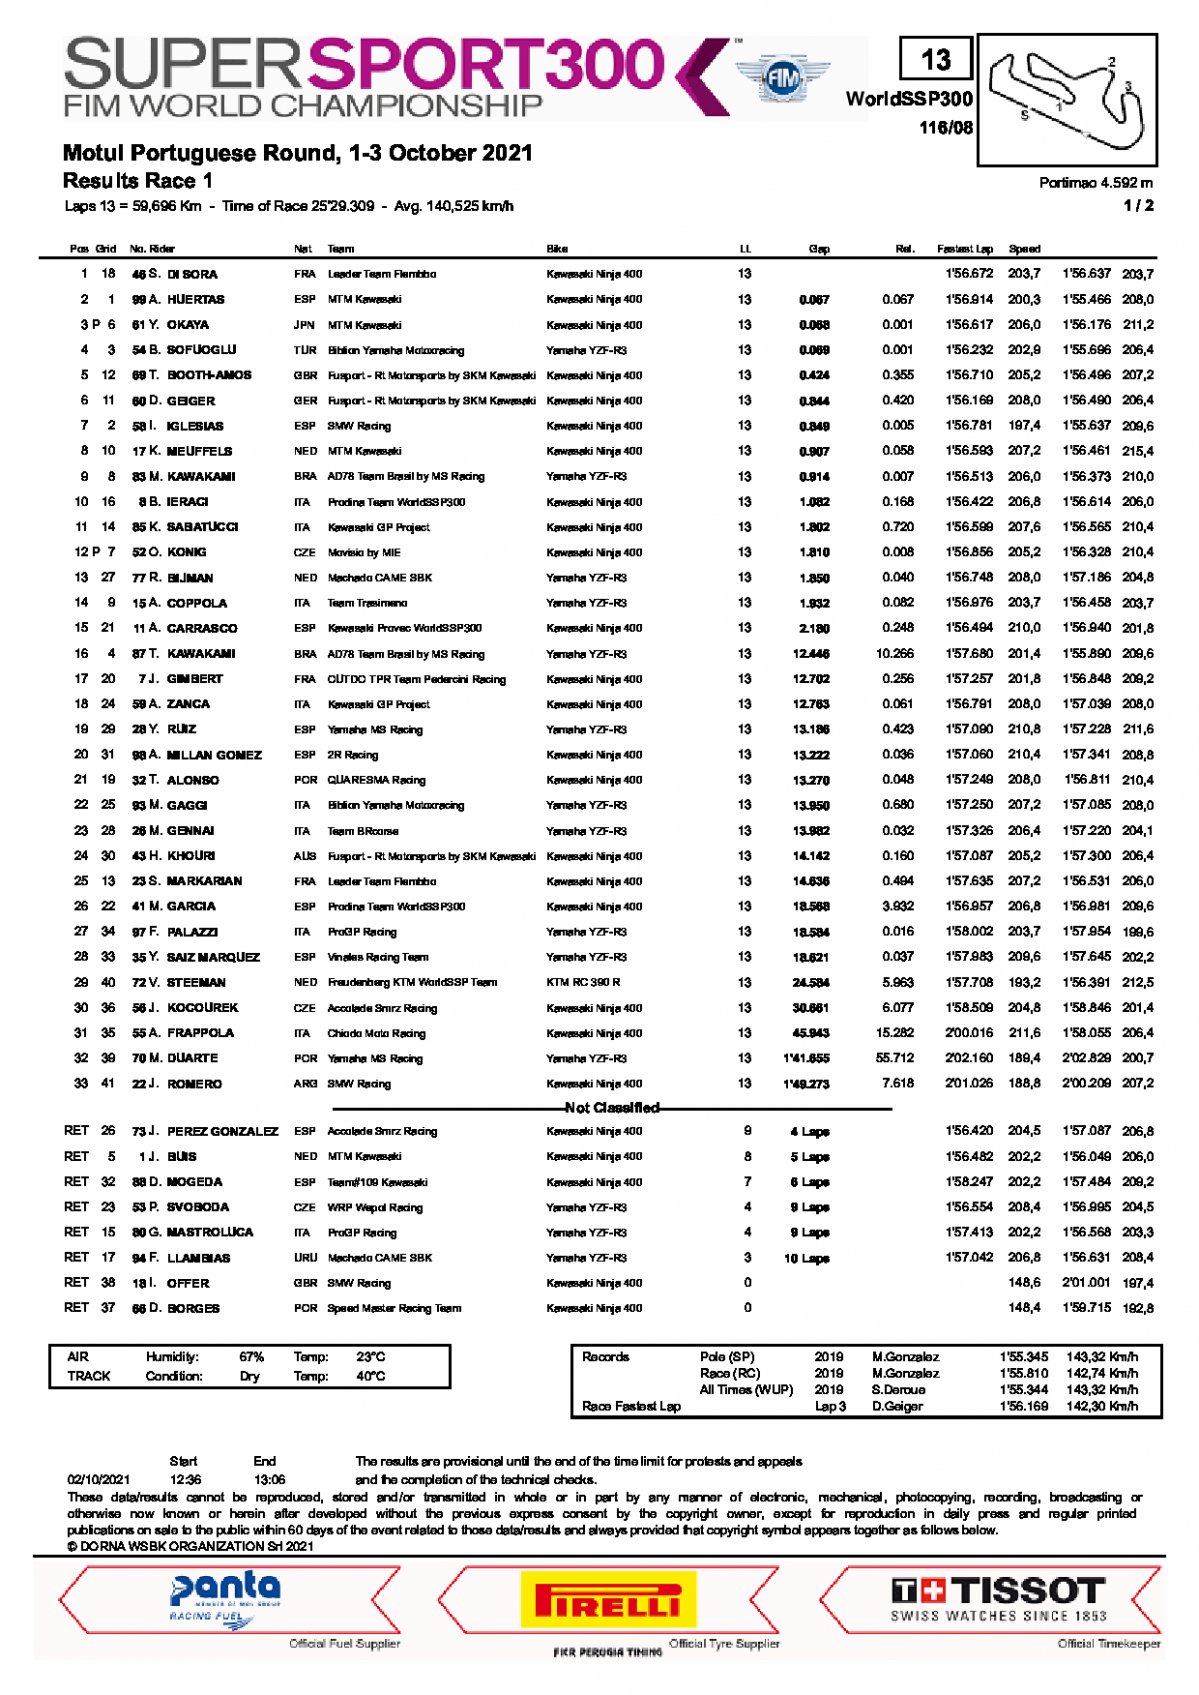 Результаты субботней гонки WorldSSP300, Autodromo do Algarve (2/10/2021)